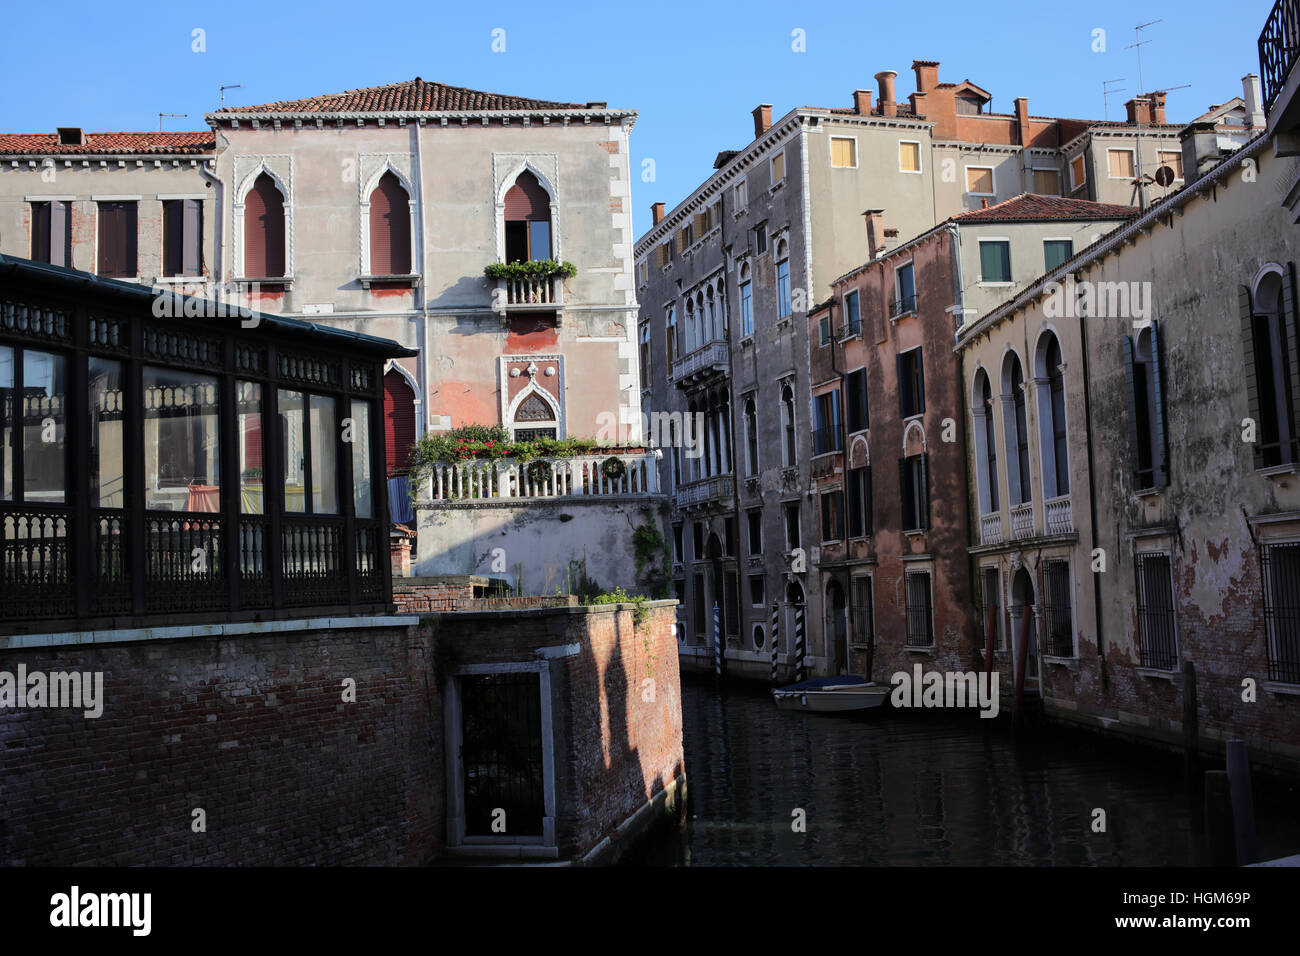 Salida S. Polo - Rio de S. Polo - Venice - Italy Stock Photo